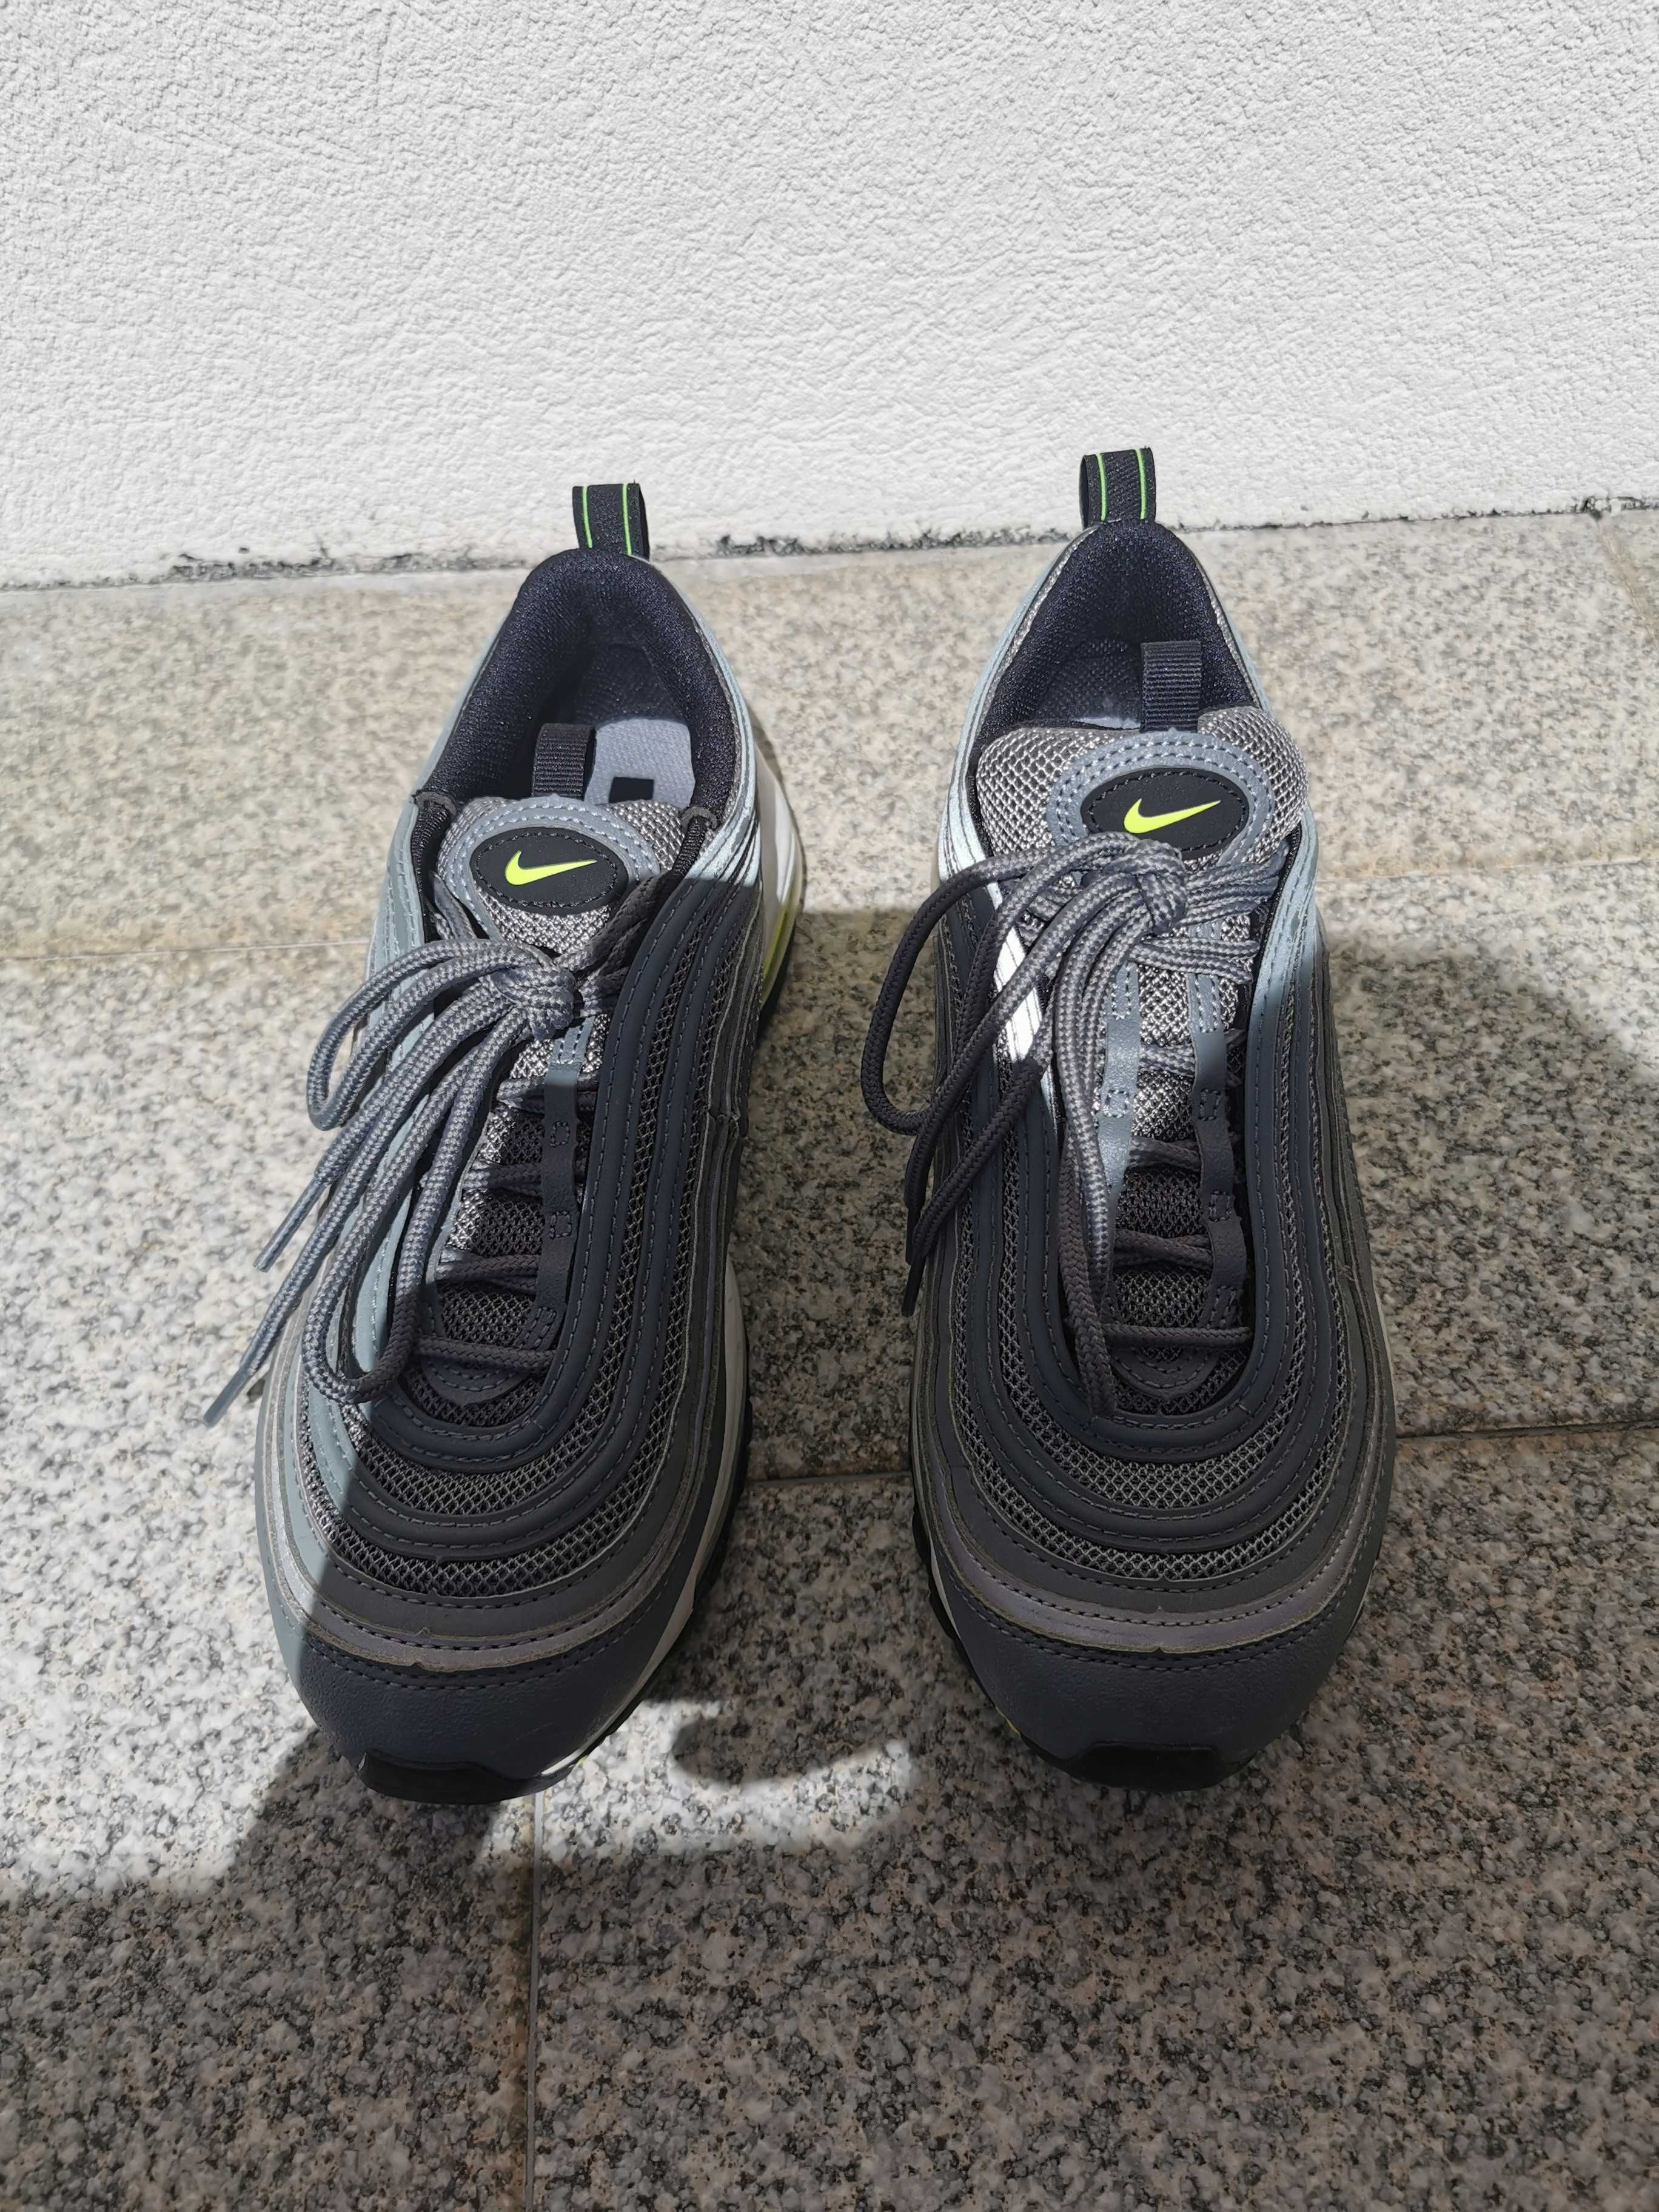 Nike air max 97 cinzentas Paredes • OLX Portugal